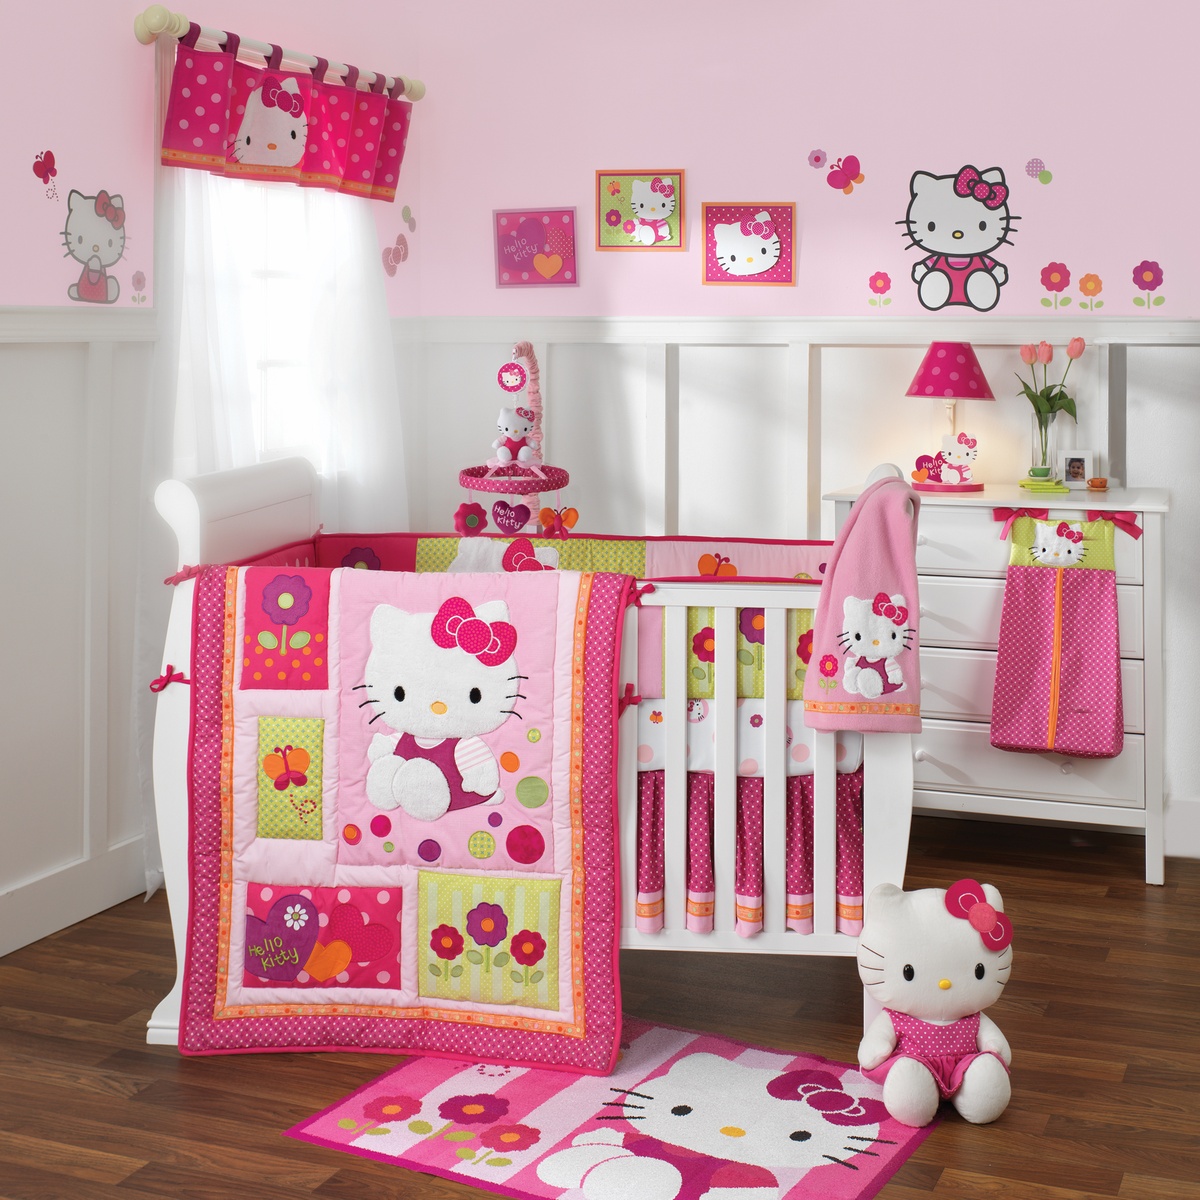 Hello Kitty Kids Room Design Idea » Viahouse.